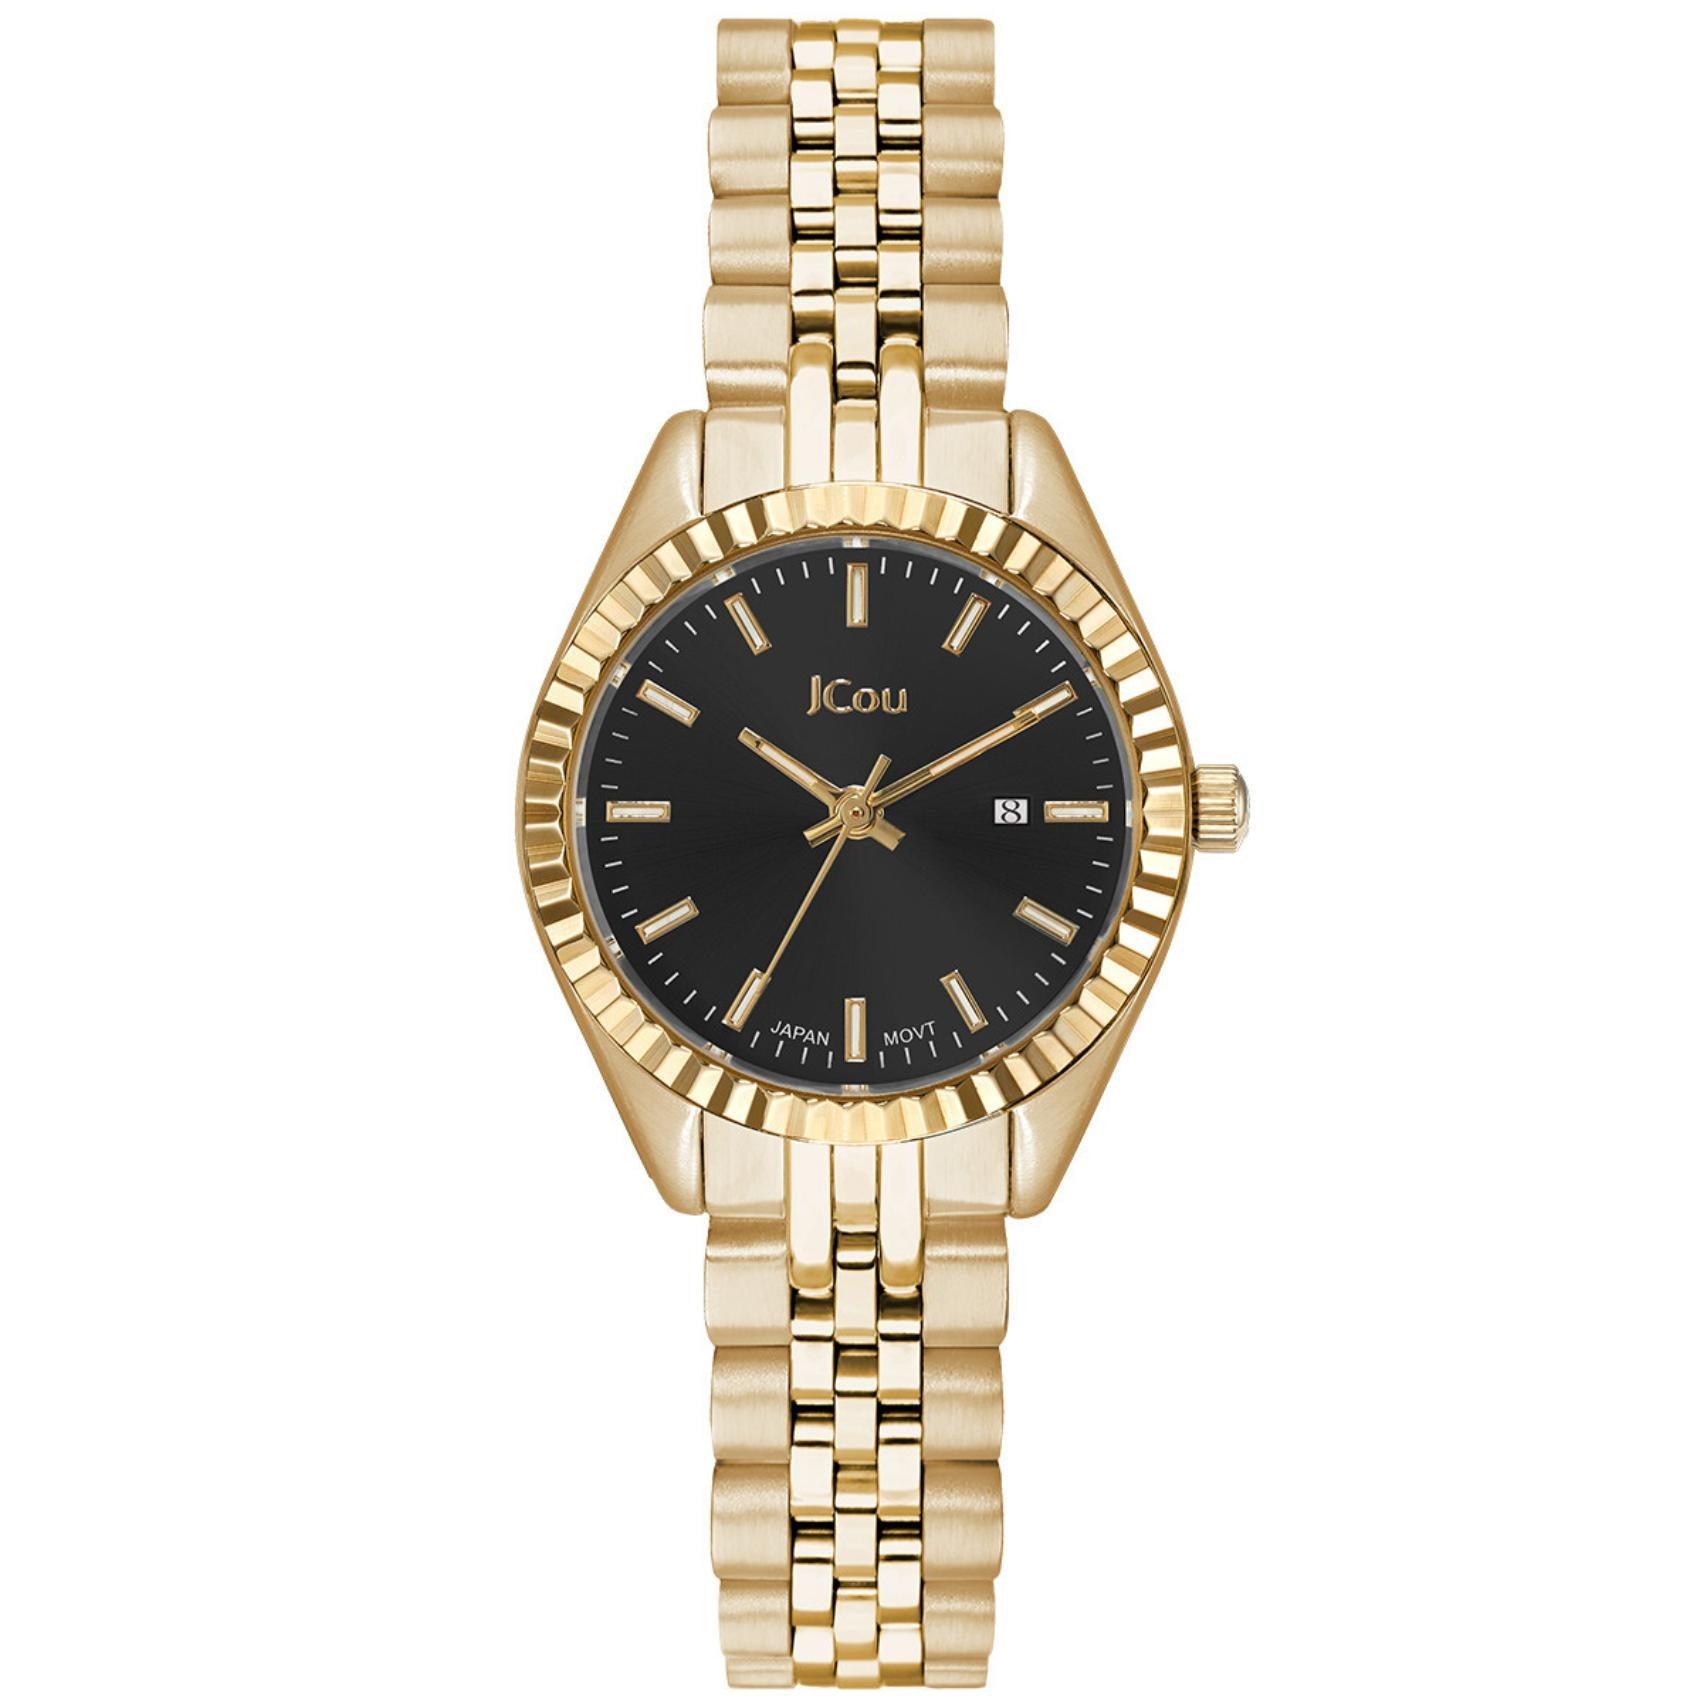 Γυναικέιο ρολόι JCOU Queen's Petit II JU19066-7 με χρυσό ατσάλινο μπρασελέ και μαύρο καντράν διαμέτρου 26mm με ημερομηνία.